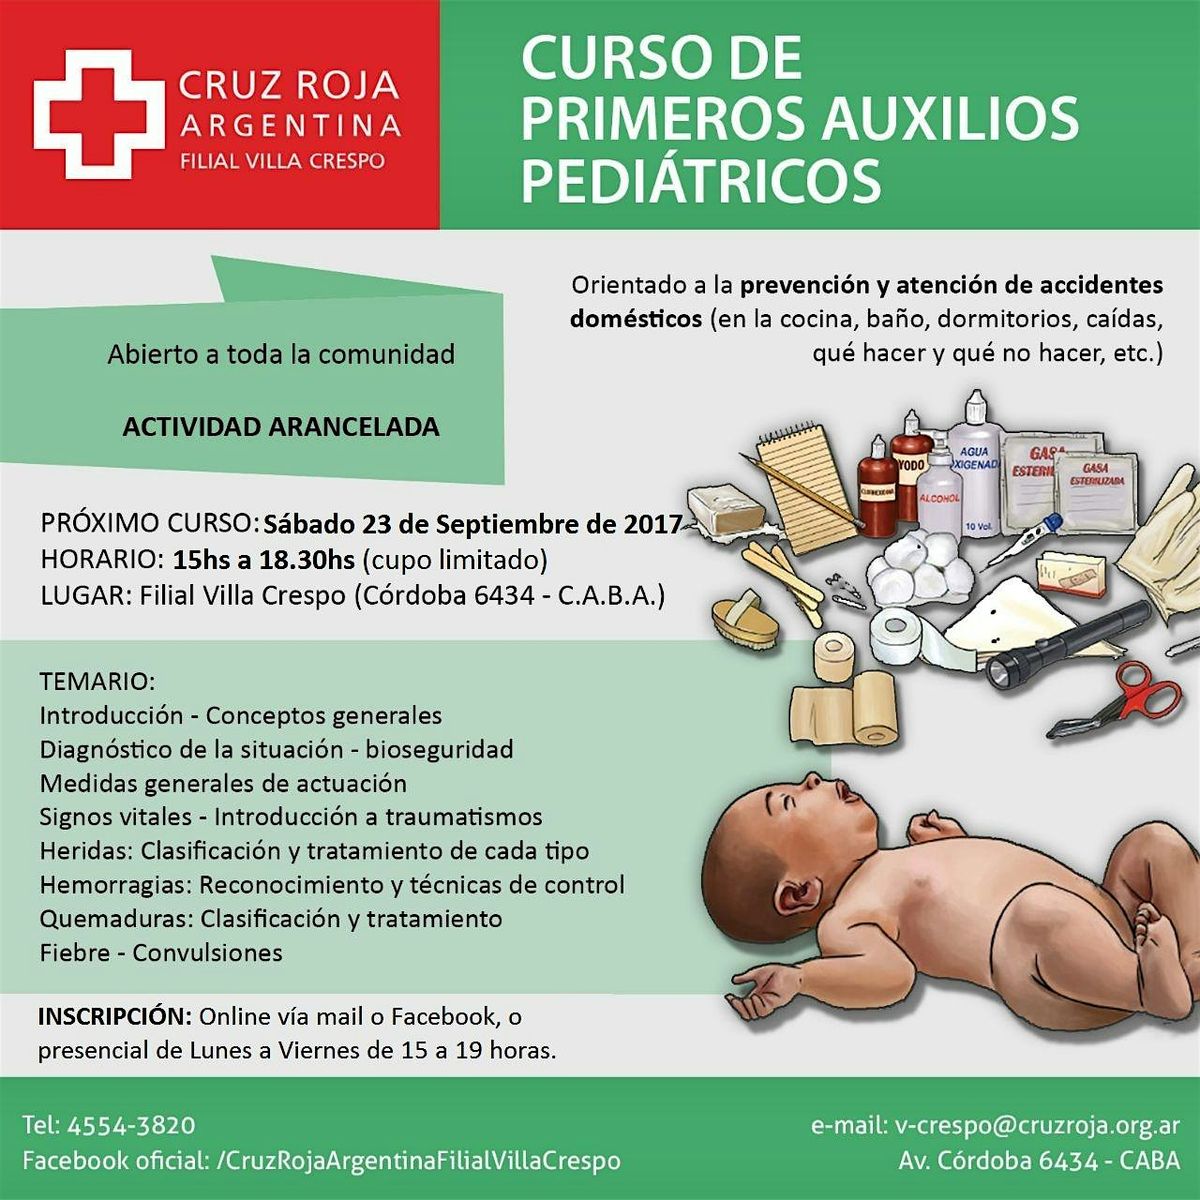 Curso de RCP en Cruz Roja (martes 16-07-24) 18 a 22 hs - Duraci\u00f3n 4 hs.